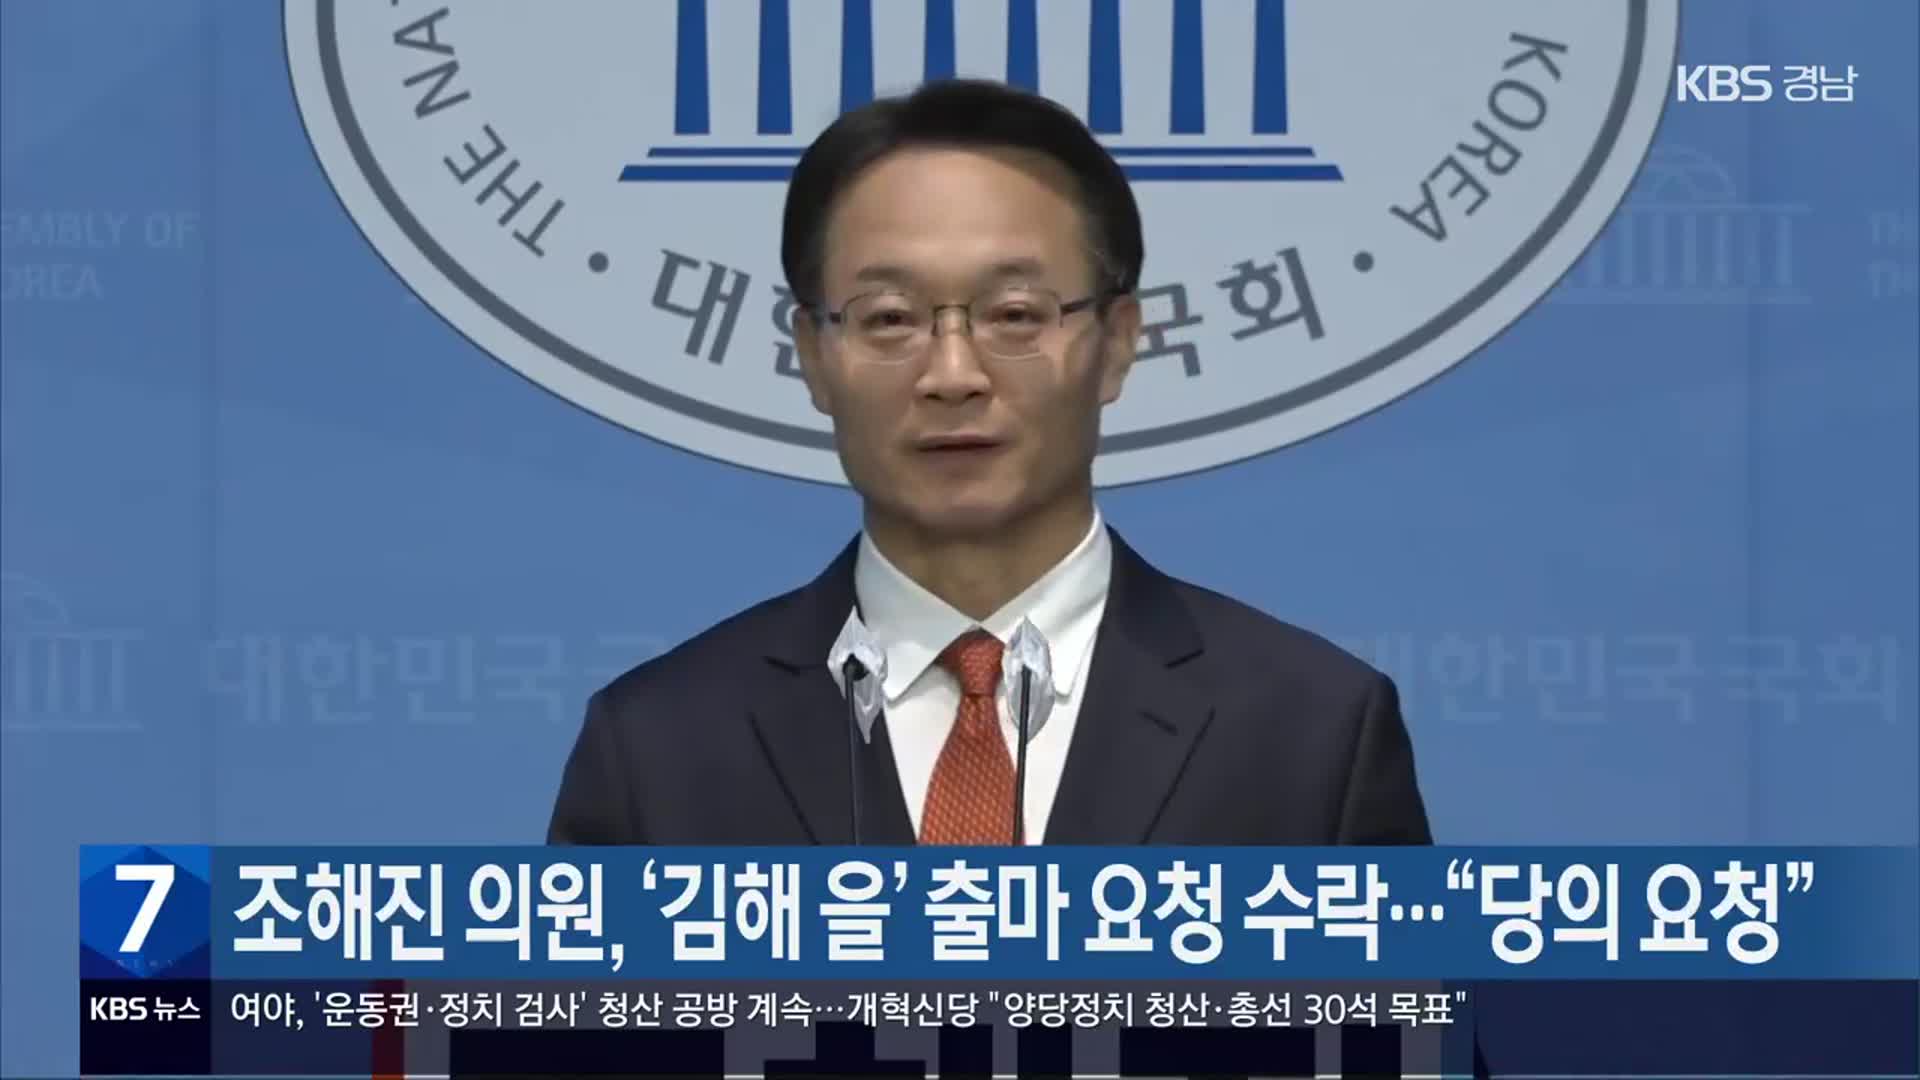 조해진 의원, ‘김해 을’ 출마 요청 수락…“당의 요청”